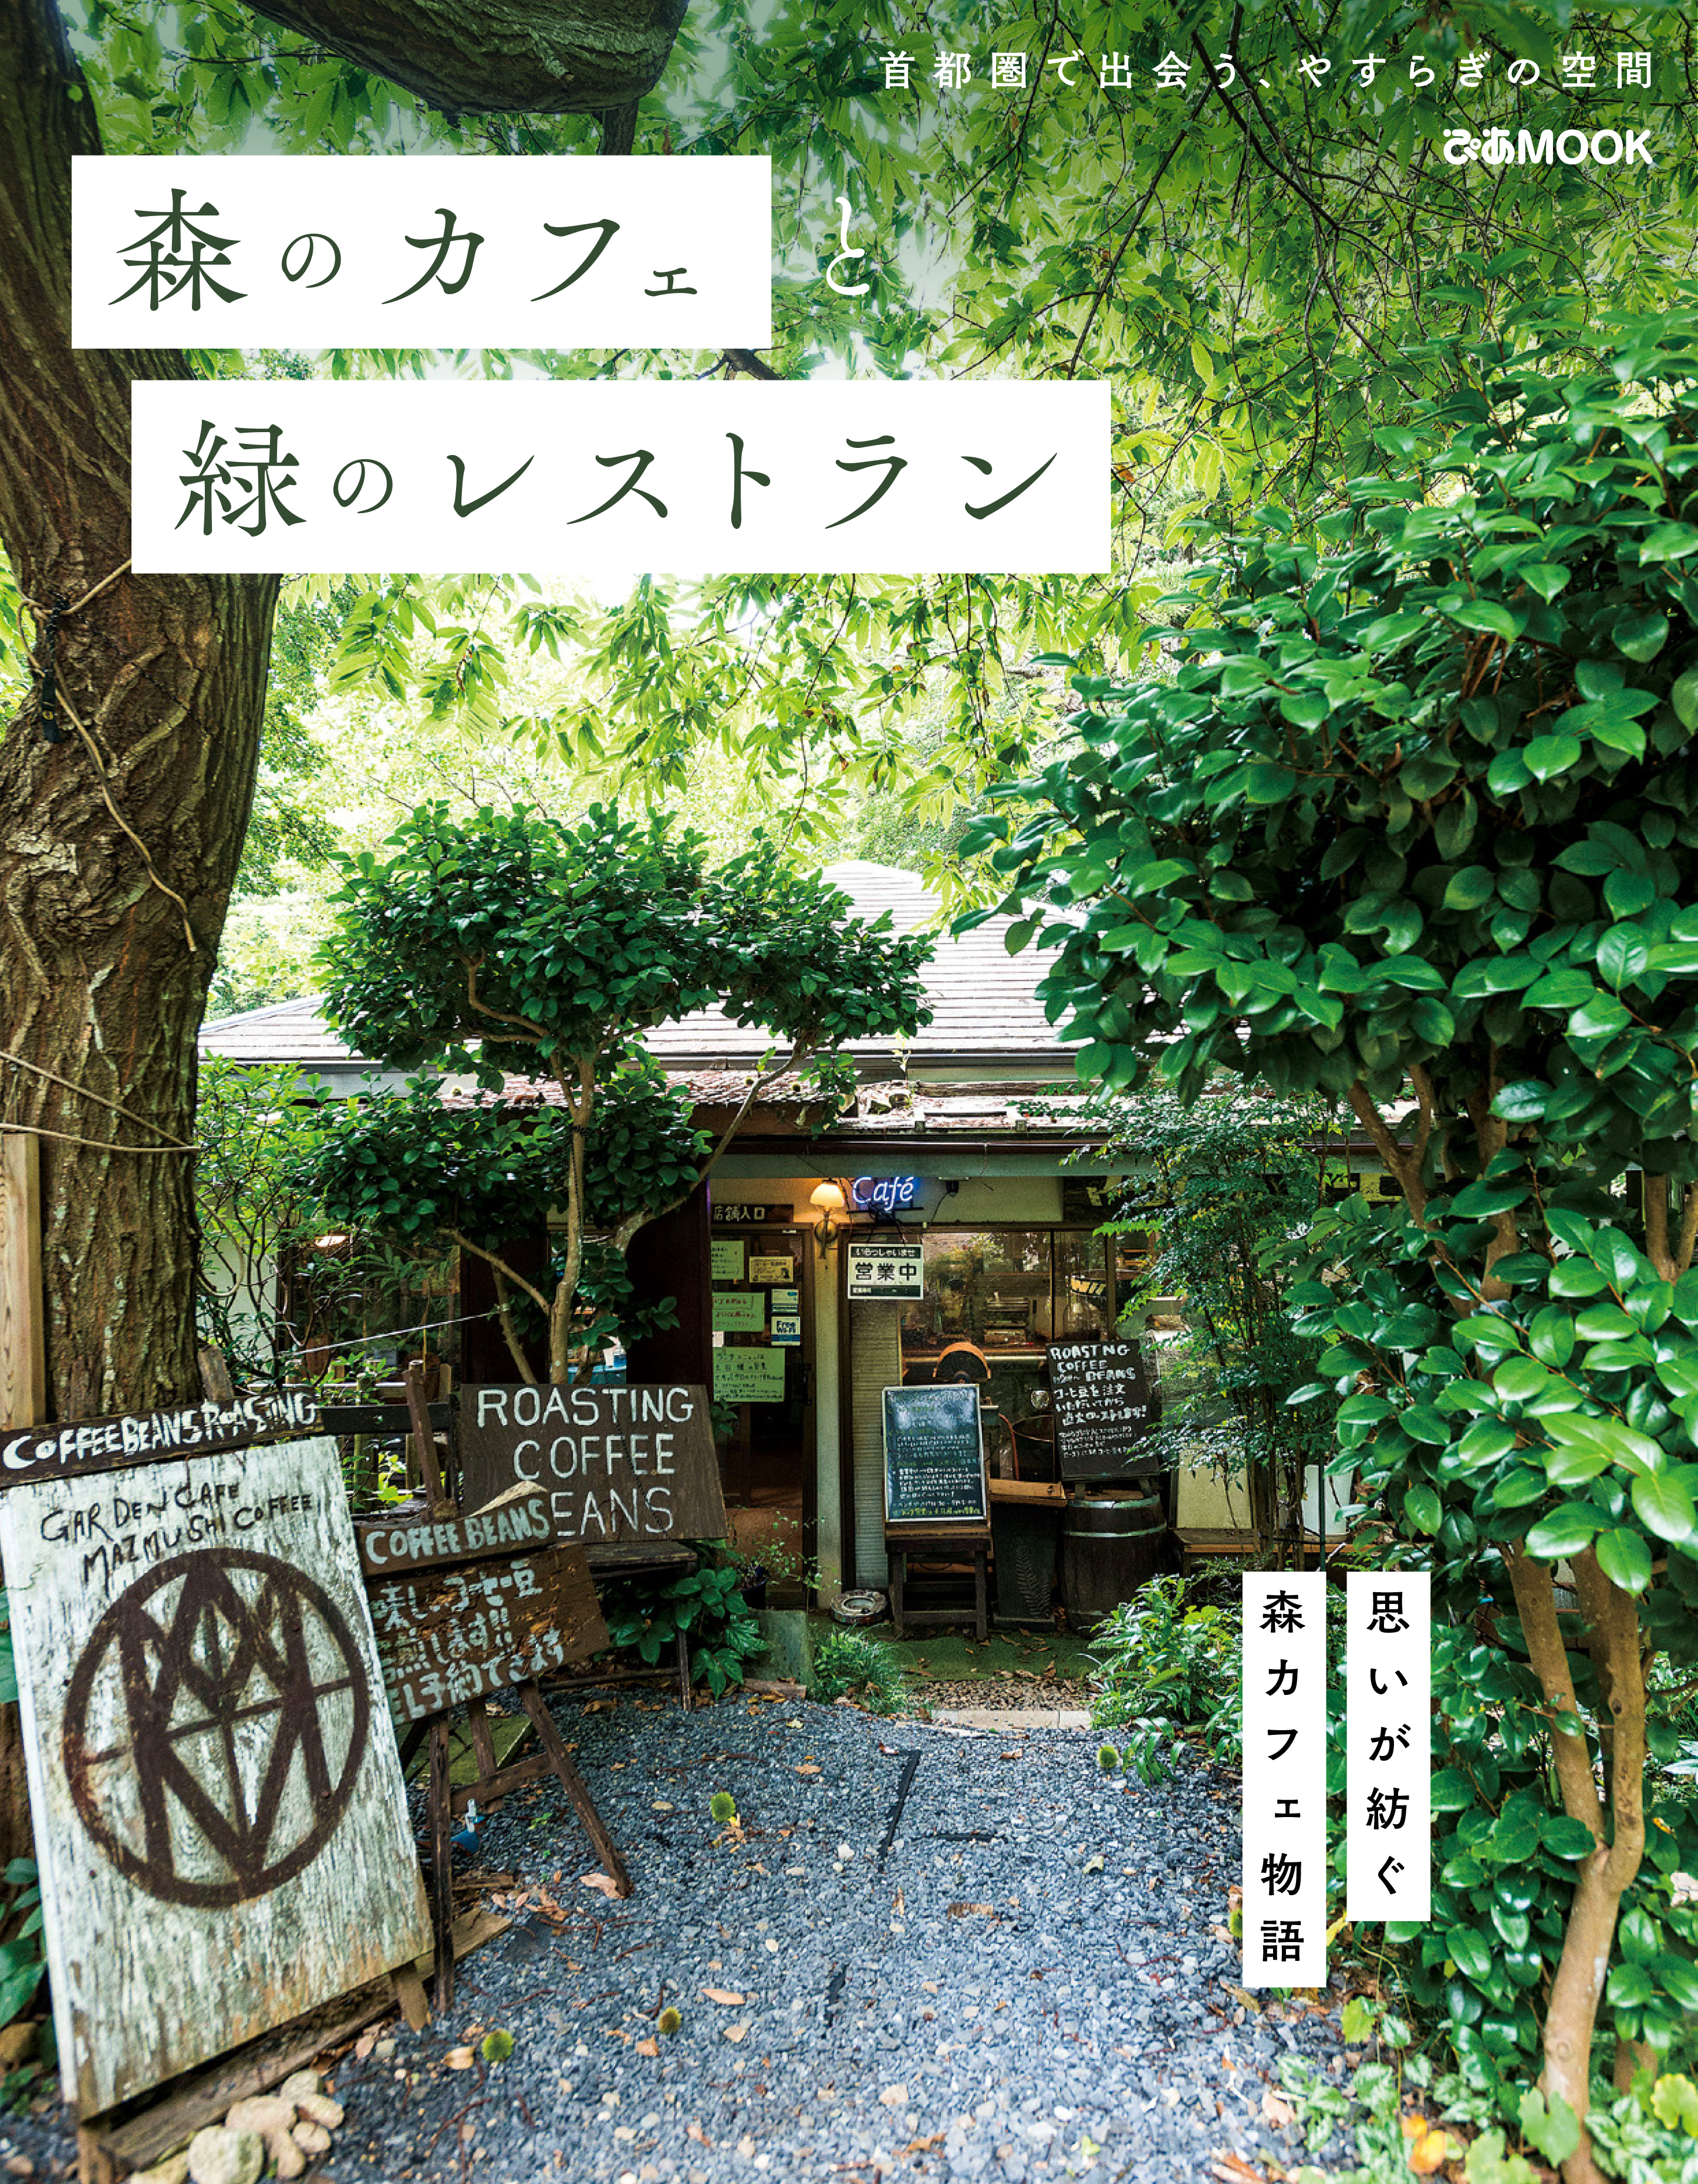 森のカフェと緑のレストラン - ぴあレジャーMOOKS編集部 - 漫画 ...